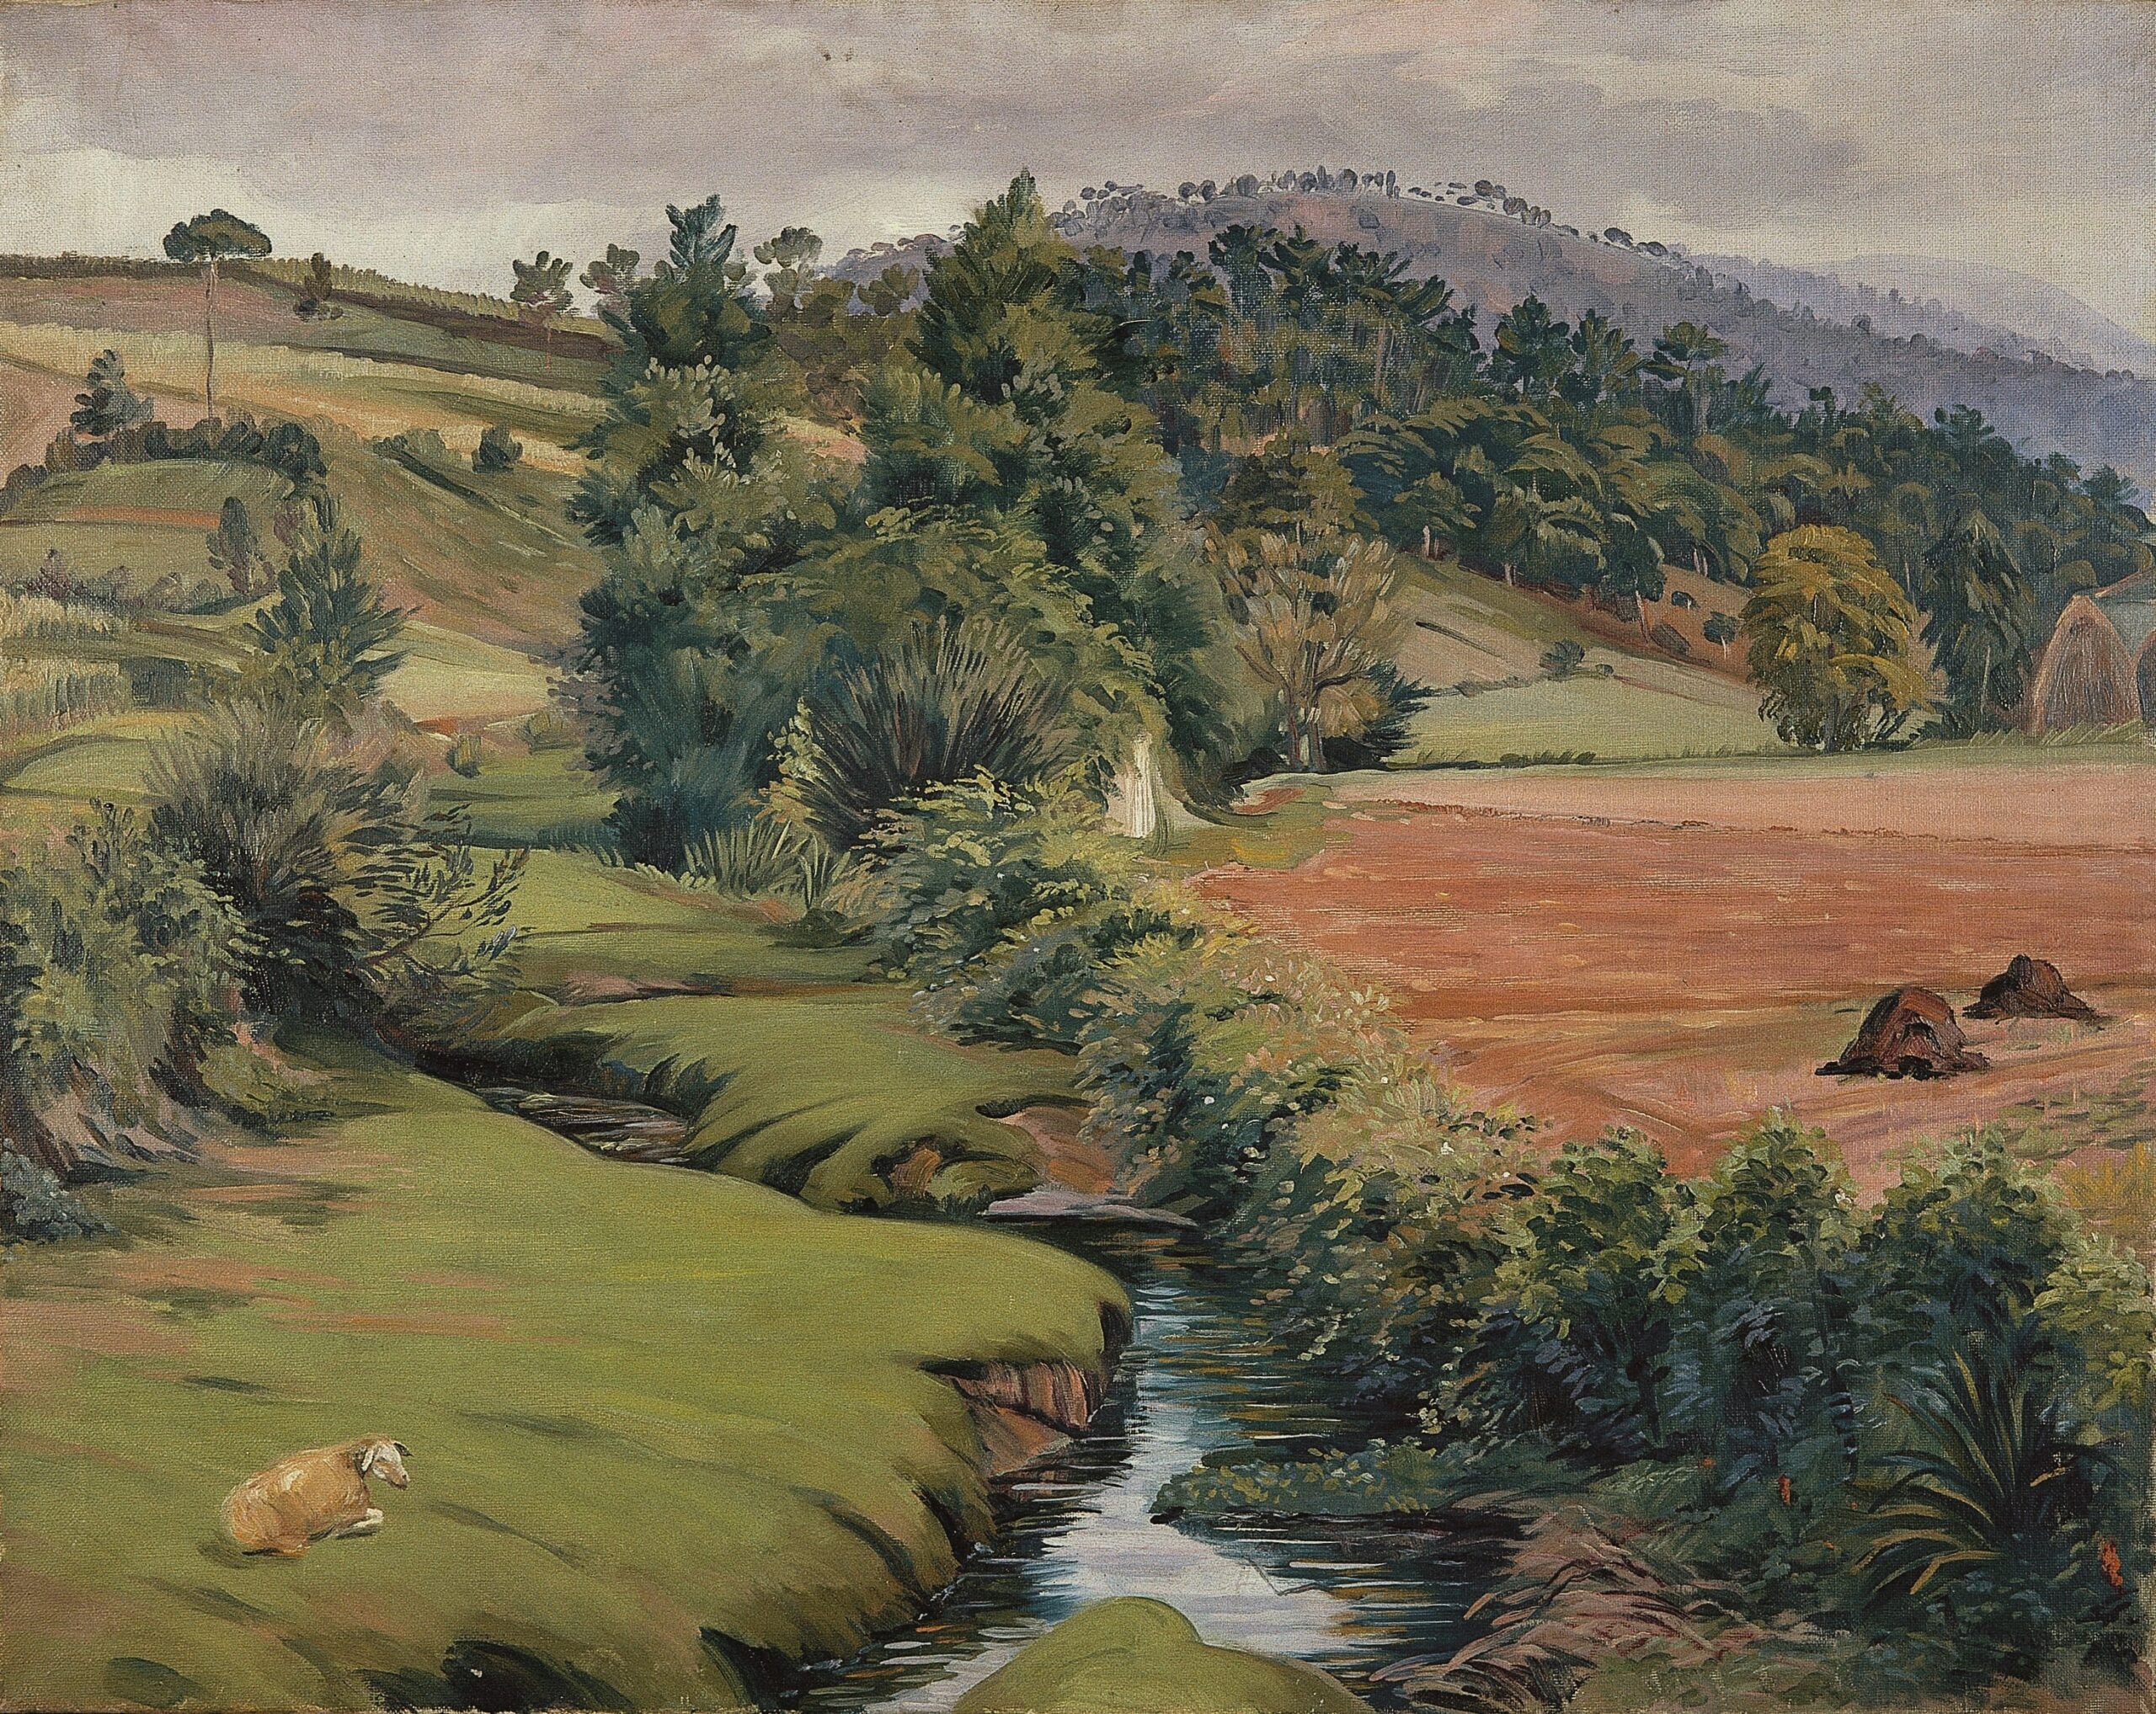 Pintura de José Manaut titulada Un riachuelo, 1947. Óleo sobre lienzo.